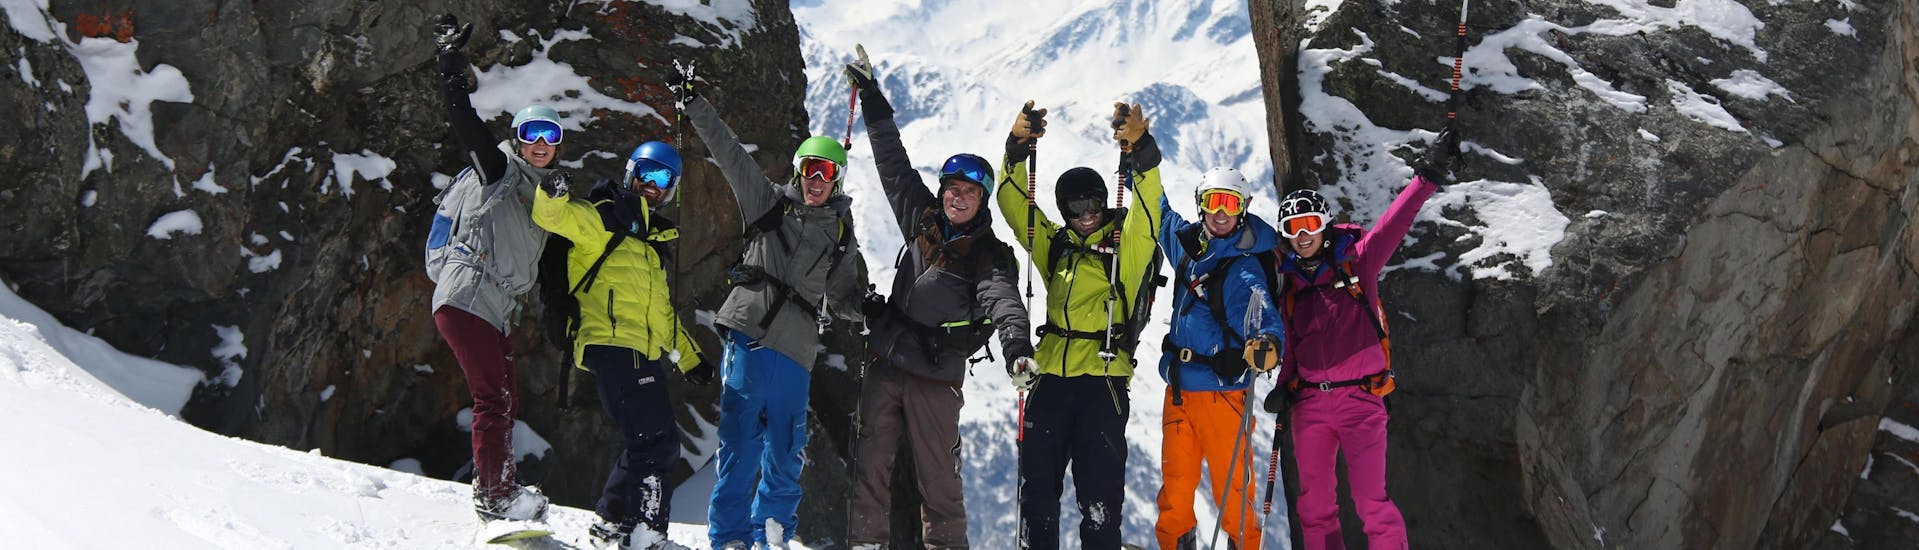 Un groupe d'amis prend des photos durant leur Cours de ski pour Adultes - Tous niveaux avec l'école de ski Prosneige Val d'Isère.